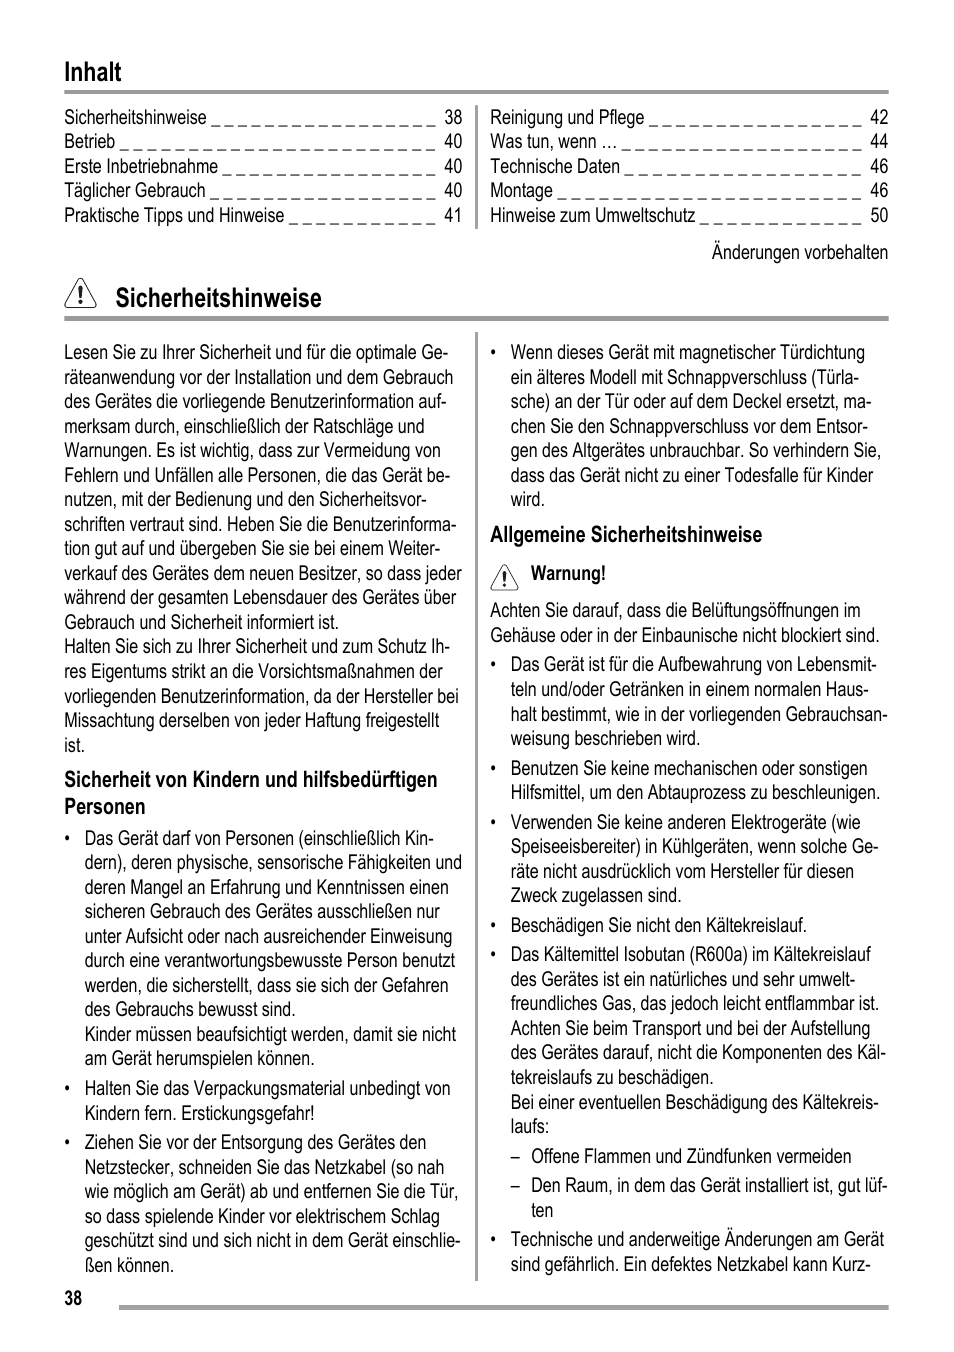 Inhalt, Sicherheitshinweise | ZANKER KBA 17401 SK User Manual | Page 38 / 52